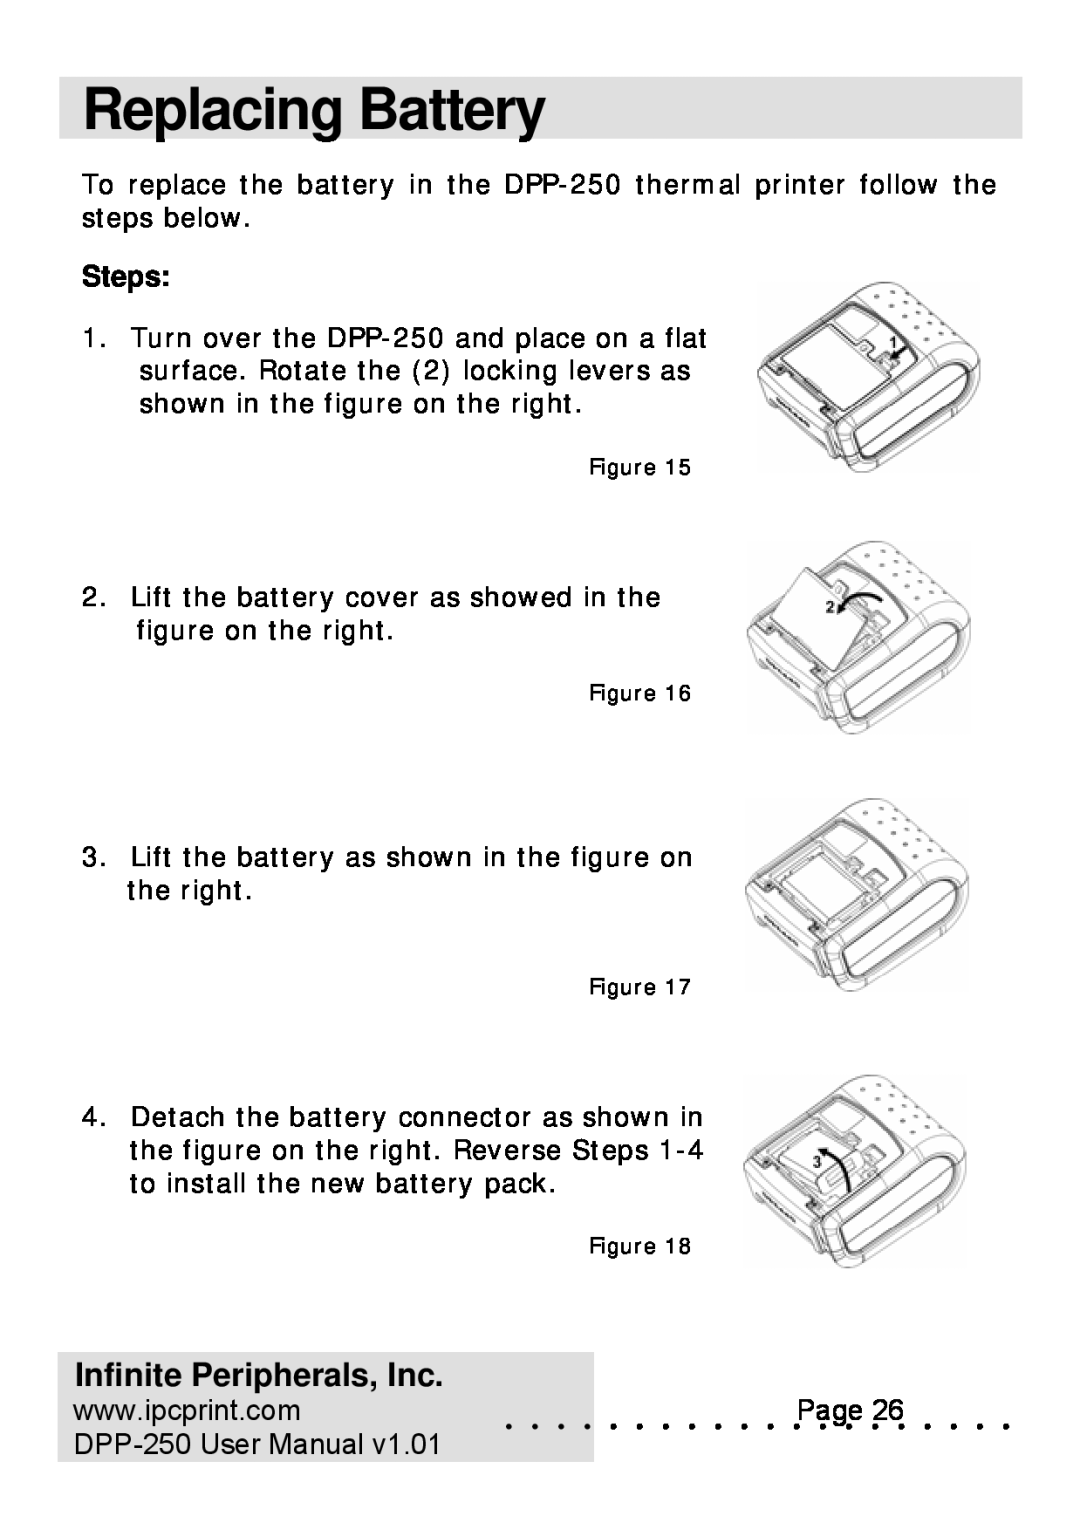 Infinite Peripherals user manual Replacing Battery, Steps, Infinite Peripherals, Inc, DPP-250 User Manual 